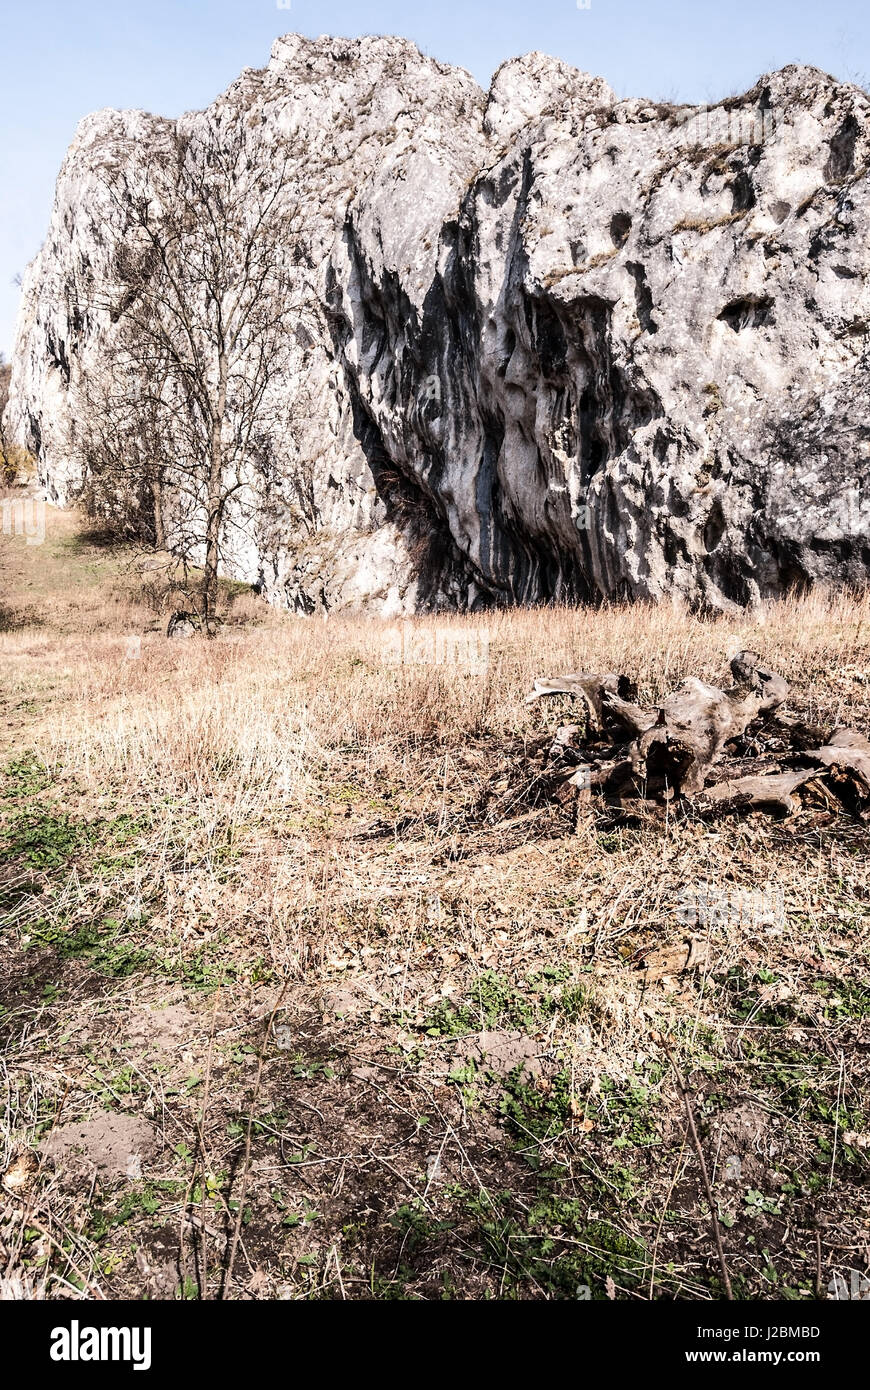 Dolomitian rock avec belle vue se replie, pré, arbre isolé et ciel clair au printemps palava montagnes en Moravie du sud en République tchèque Banque D'Images